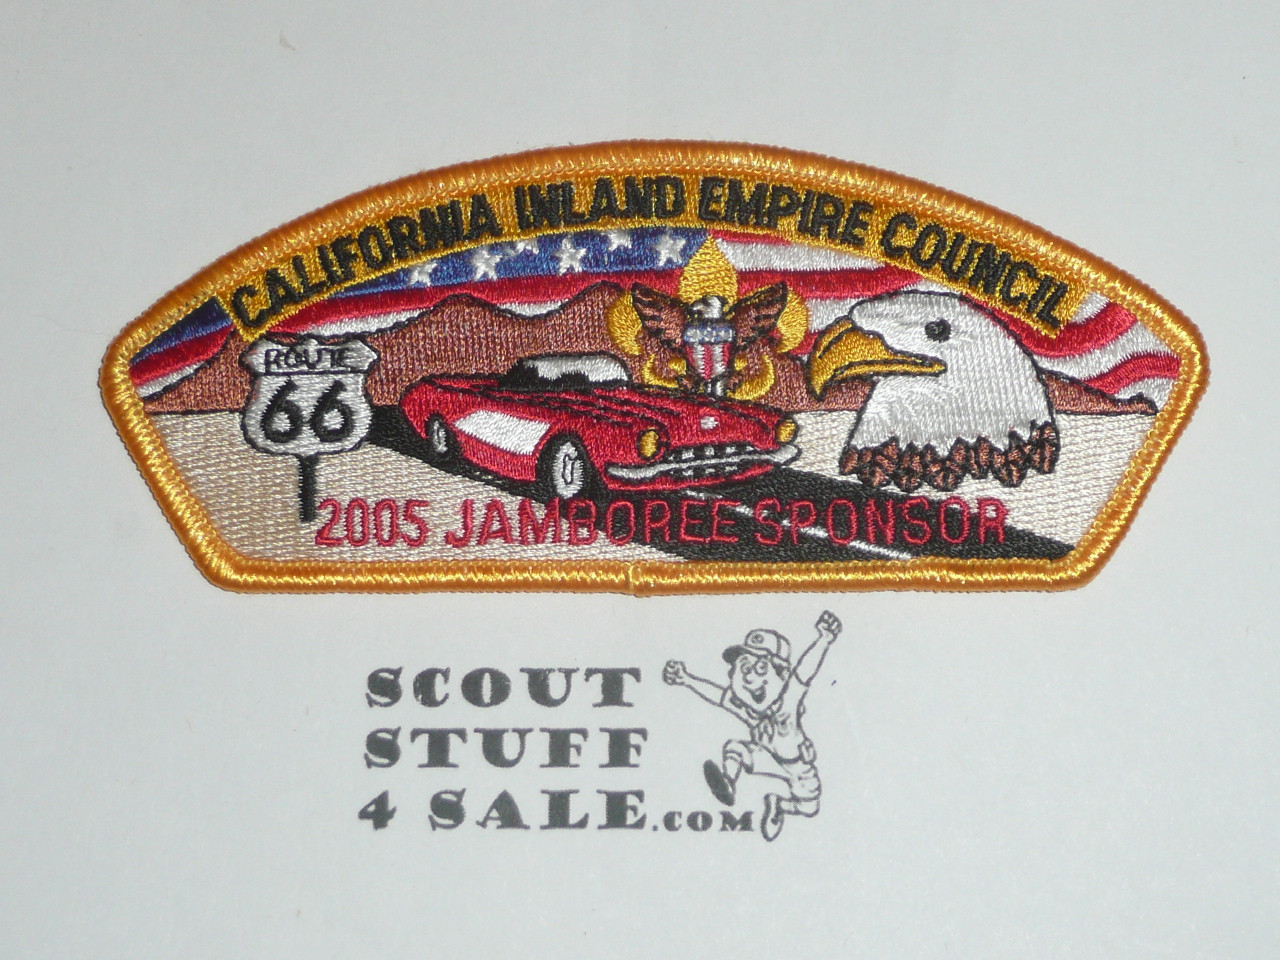 2005 National Jamboree JSP - California Inland Empire Council, sponsor